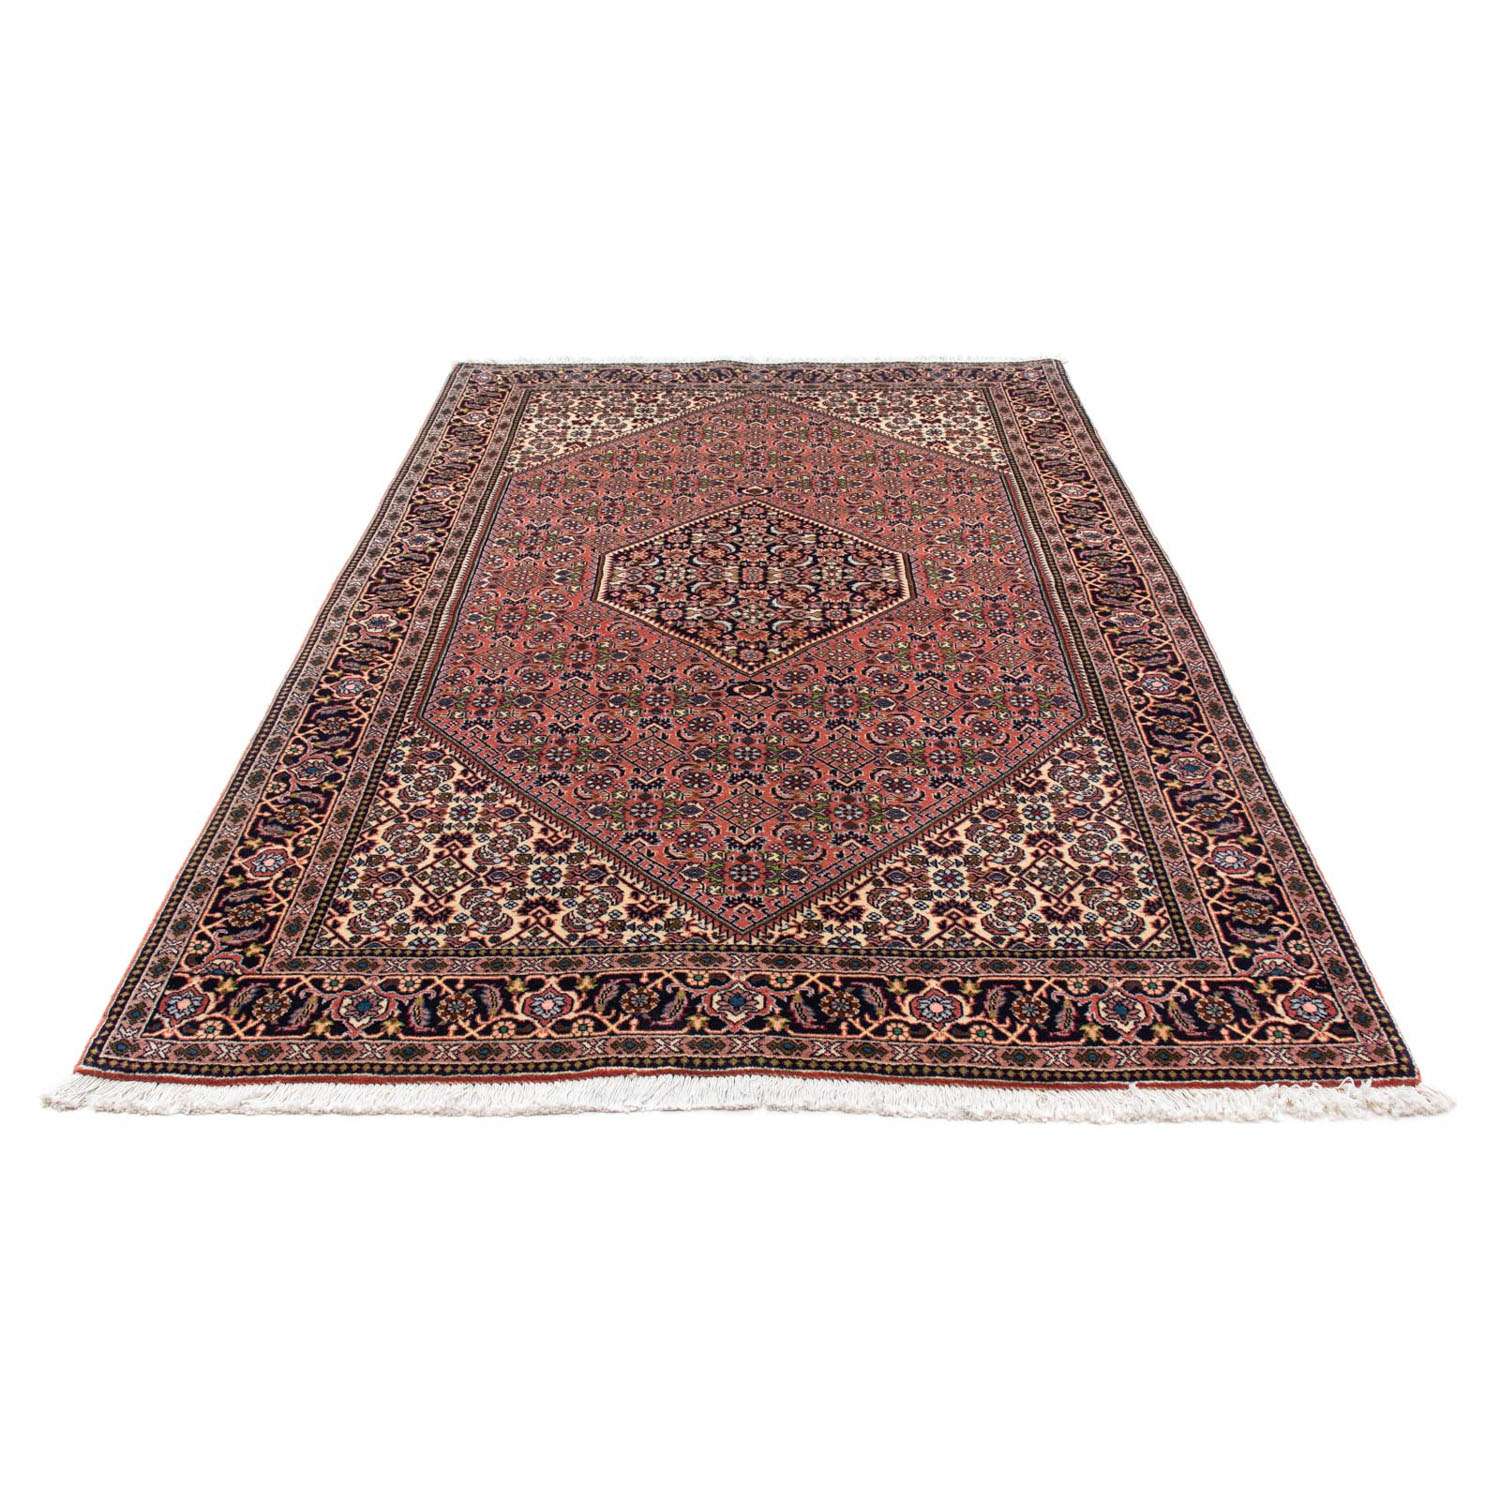 Perzisch tapijt - Bijar - 234 x 142 cm - rood